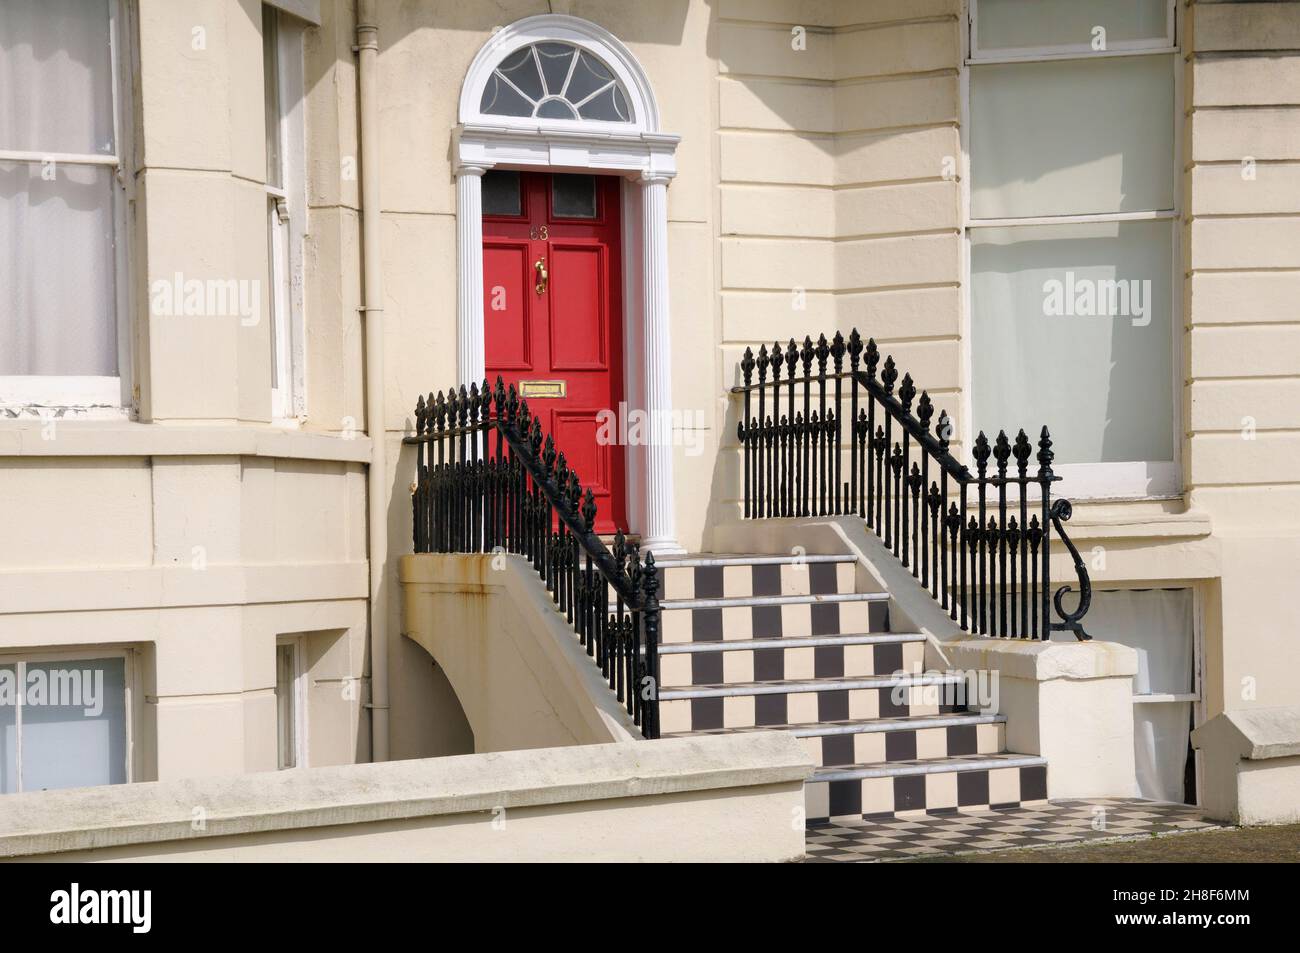 Extérieur de la propriété avec une porte rouge, des rampes en fer forgé et des marches noires et blanches, Brighton, East Sussex, Angleterre, Royaume-Uni Banque D'Images